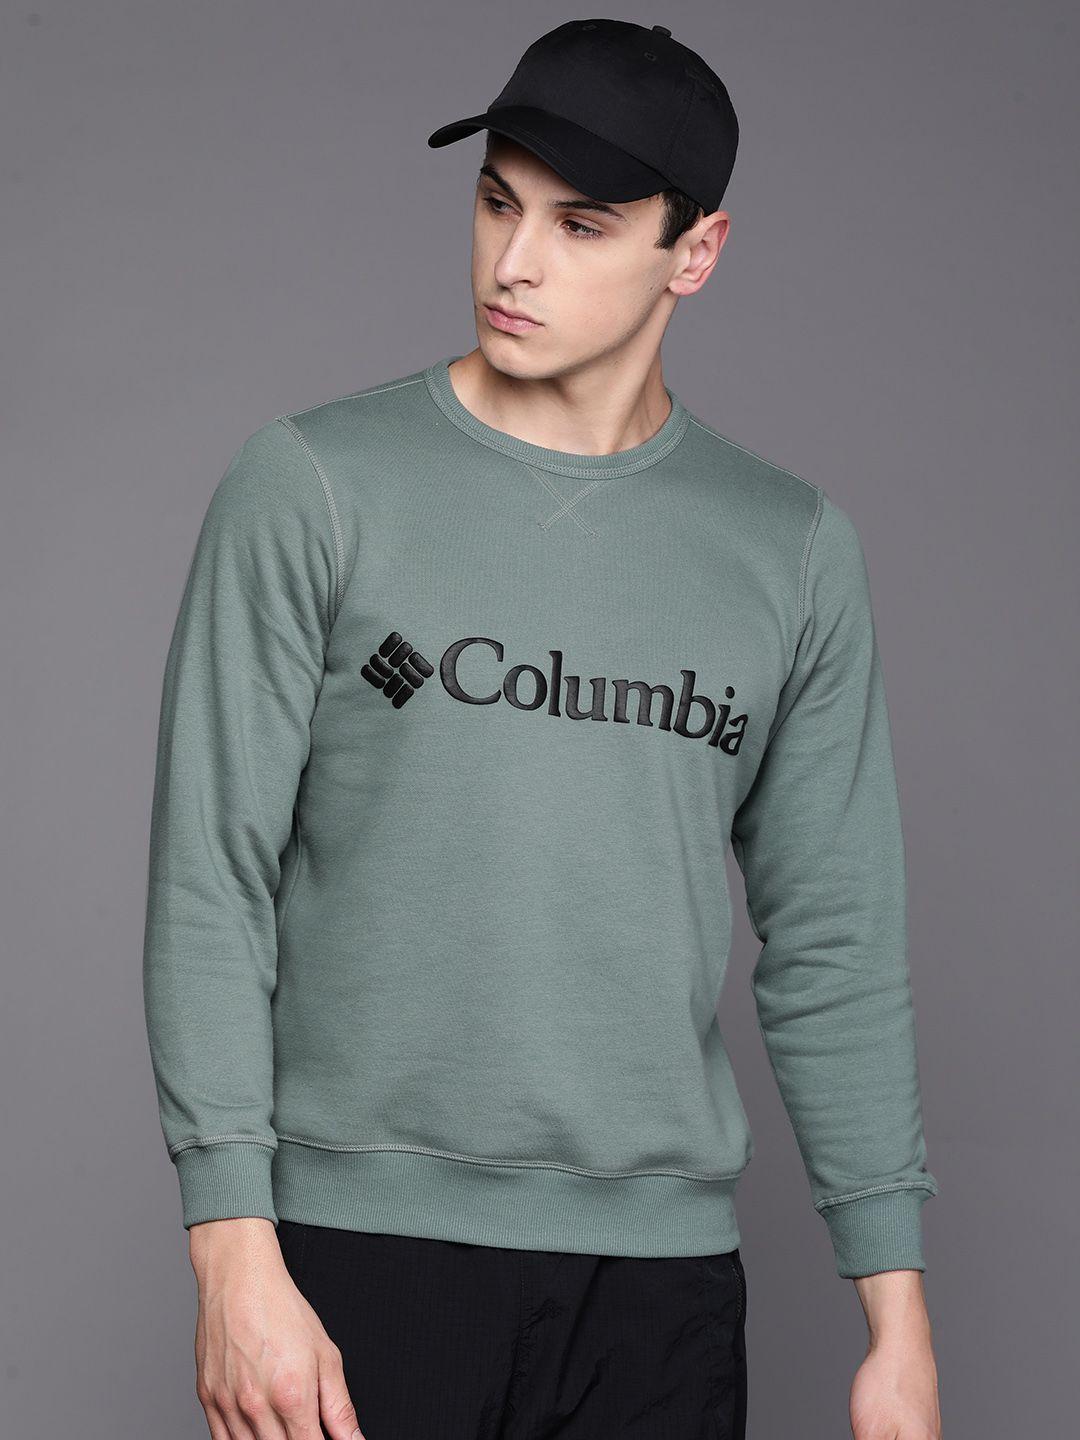 columbia printed sweatshirt